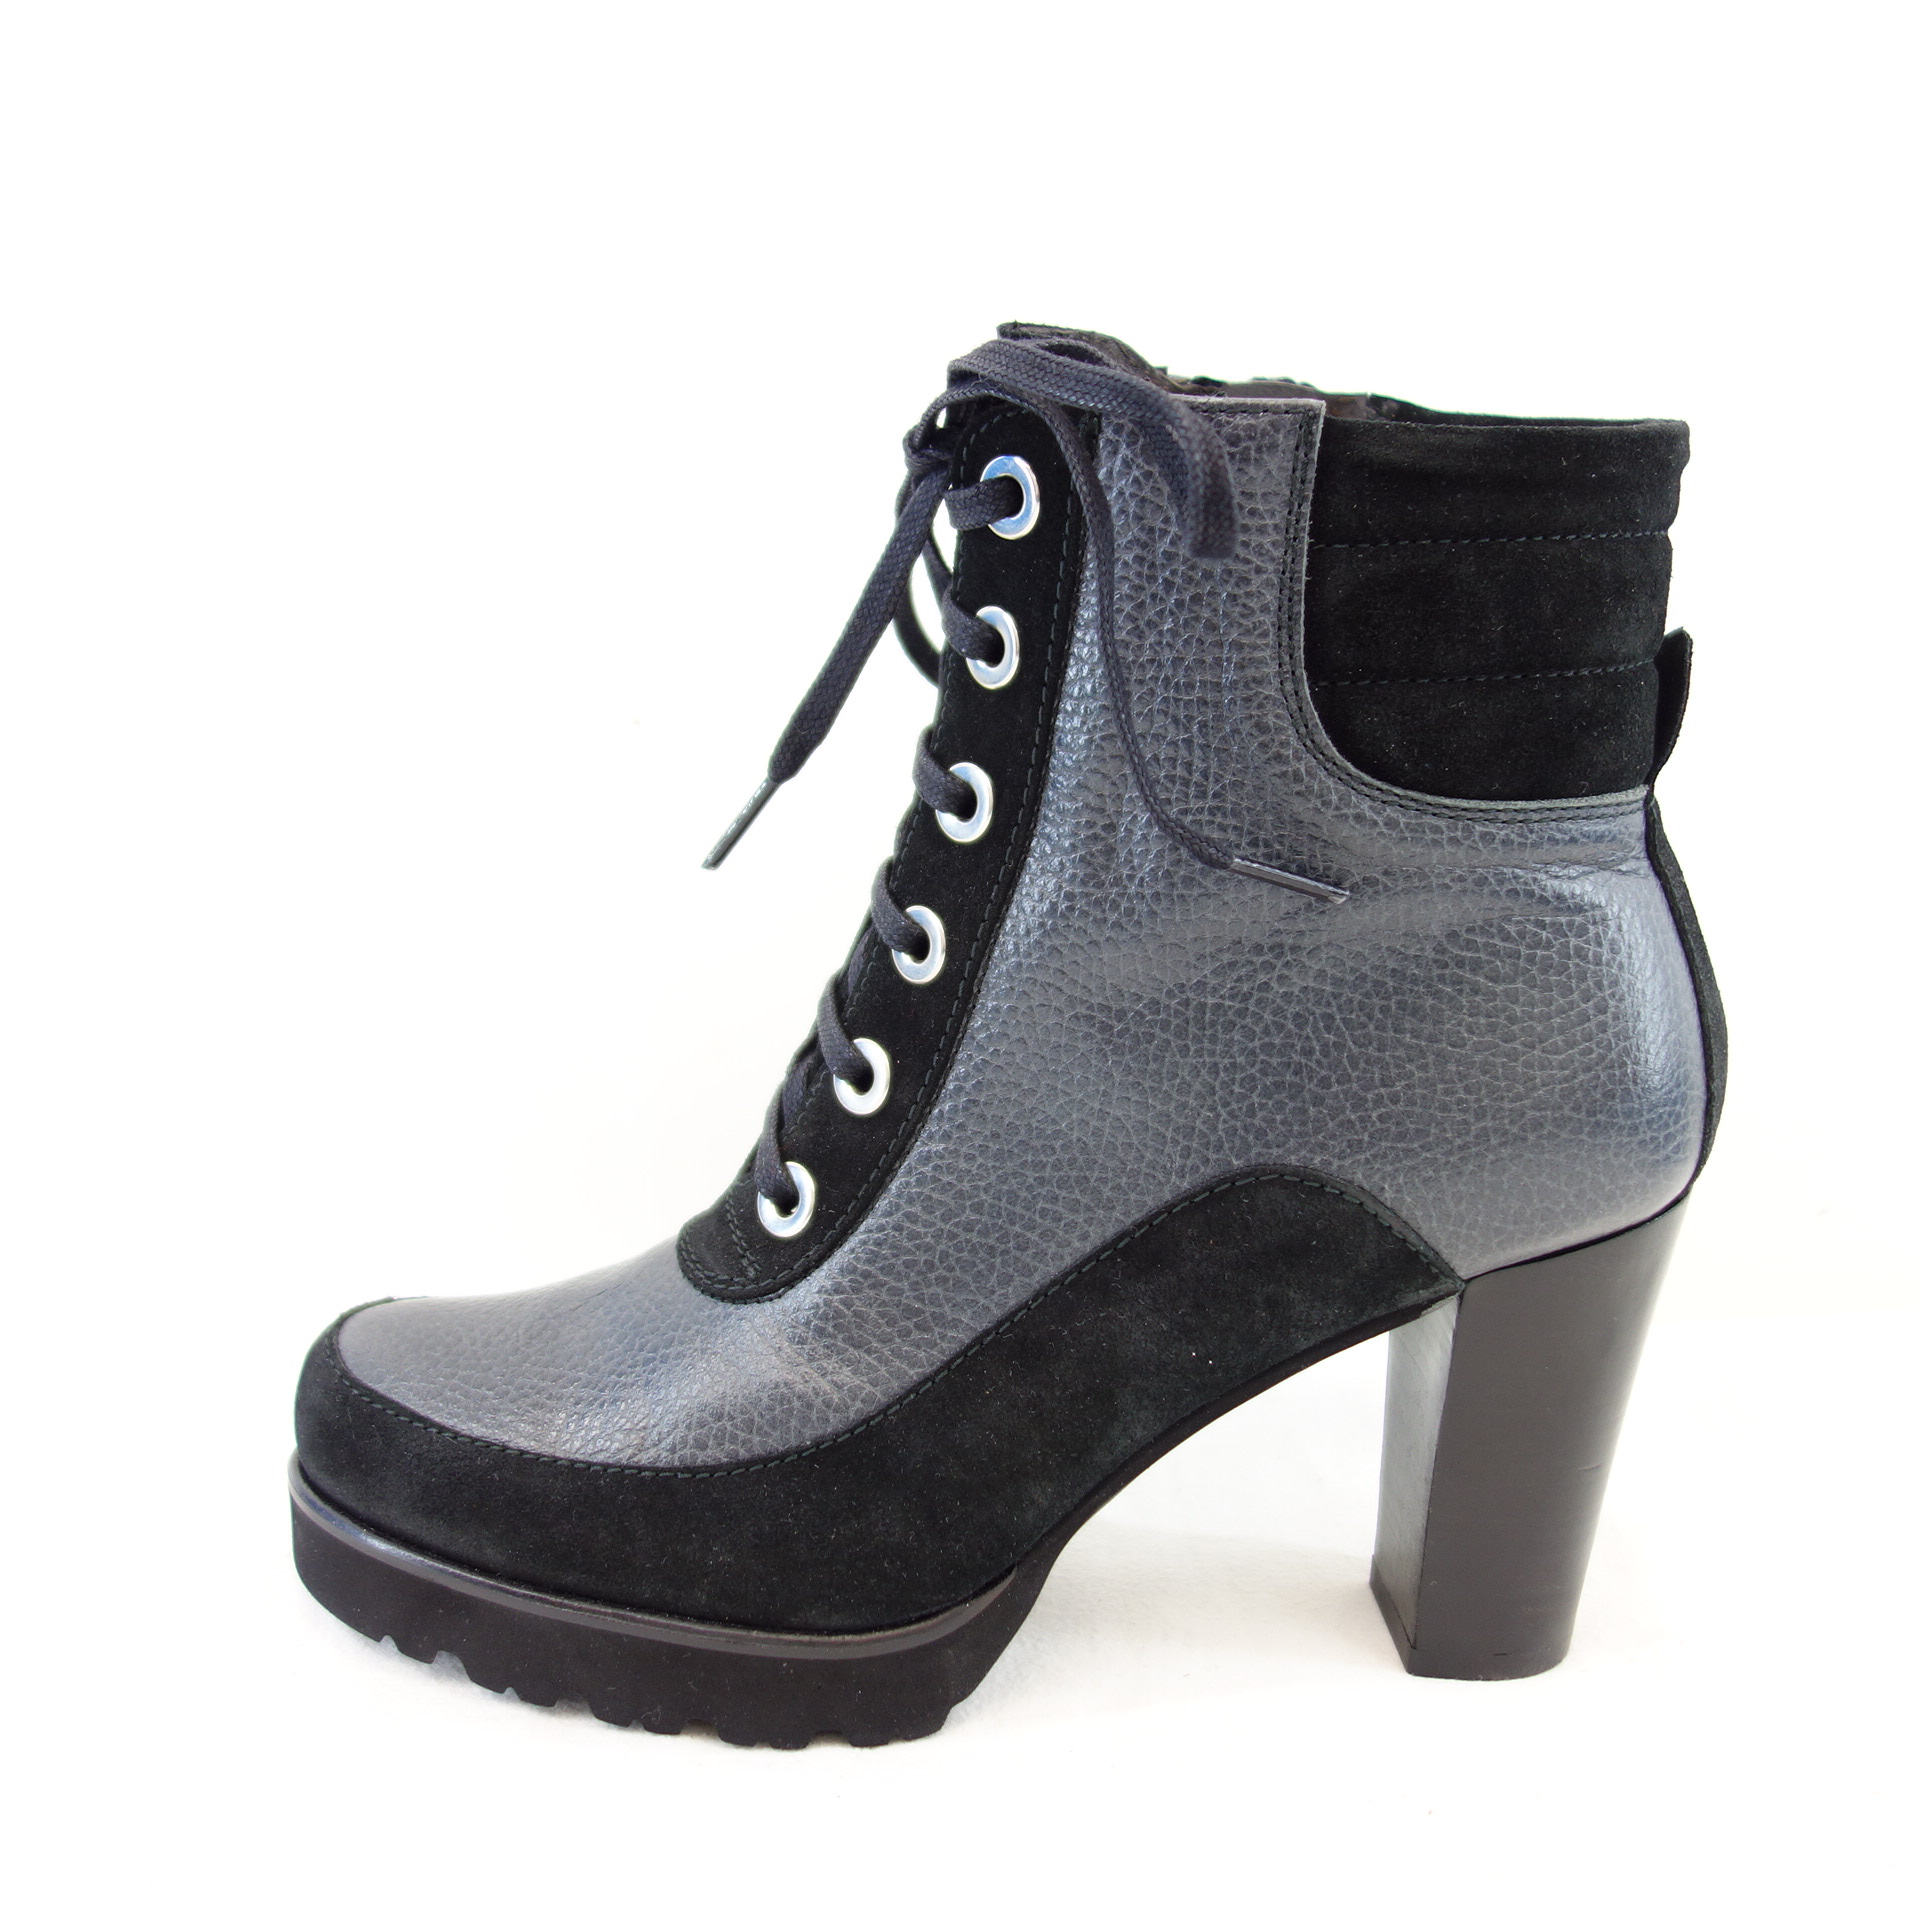 GADEA Damen Schuhe Ankle Boots Stiefeletten Schwarz Leder High Heels Np 179 Neu